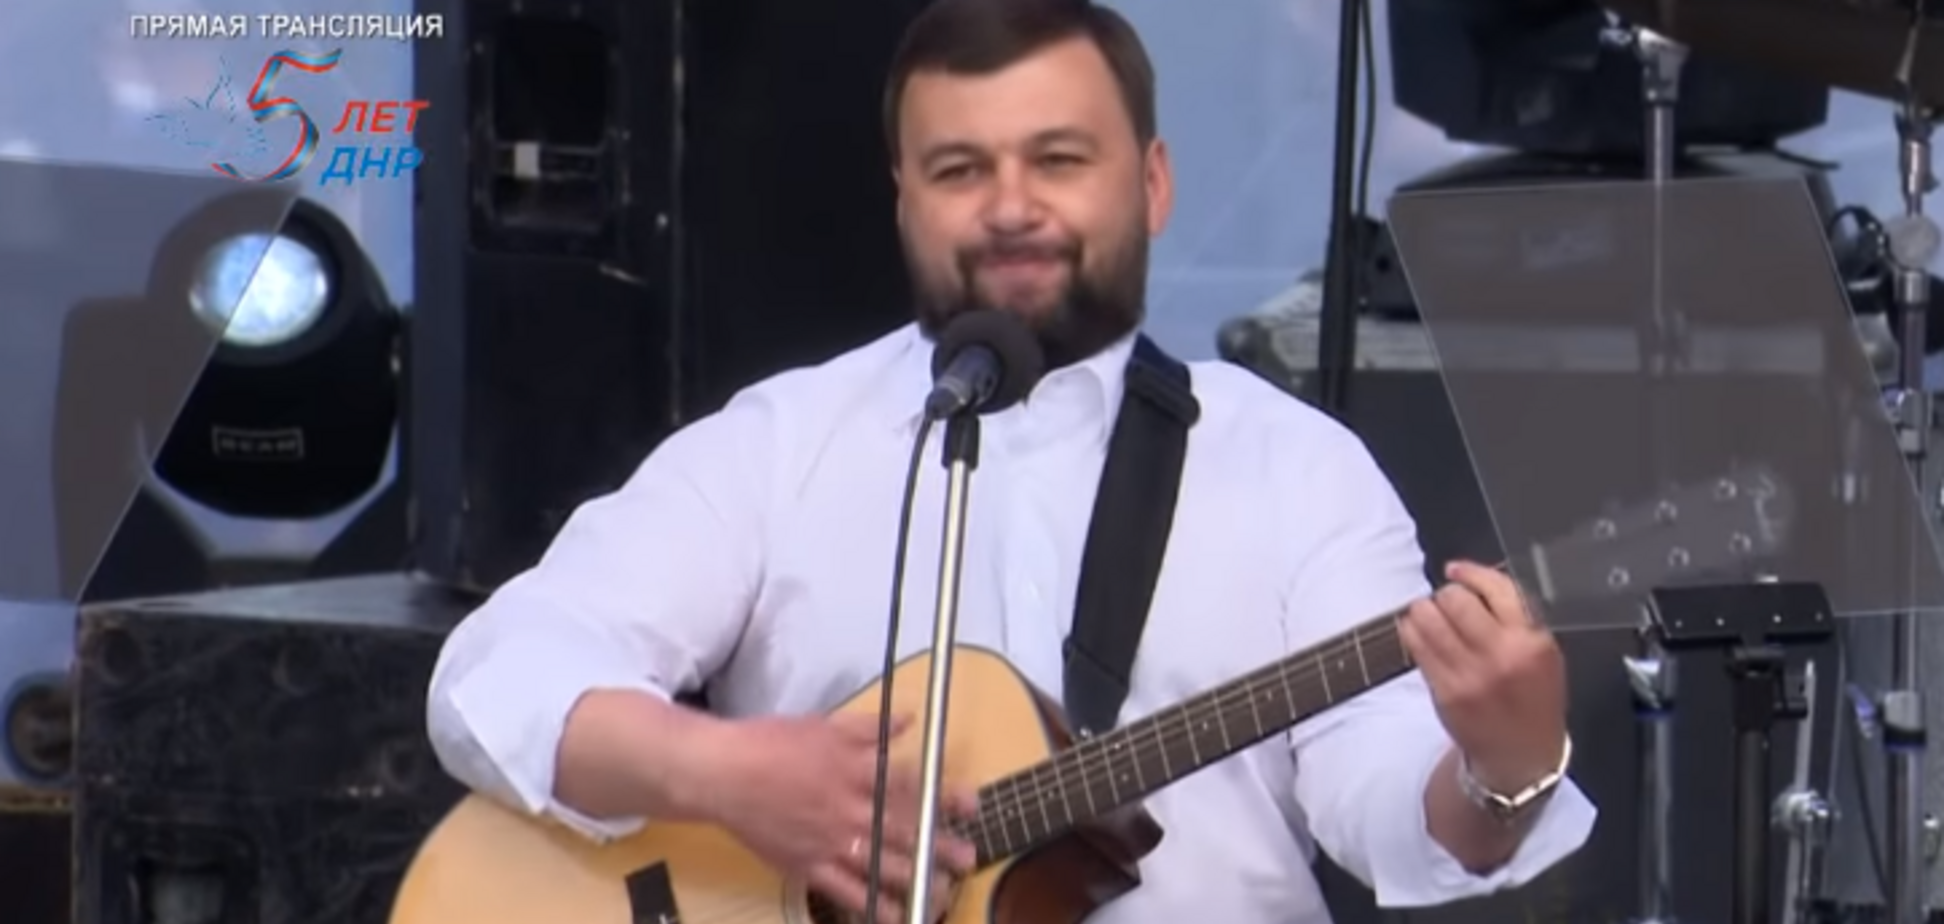 'Никому не дадим обижать!' Главарь 'ДНР' спел под гитару о верности России: видео